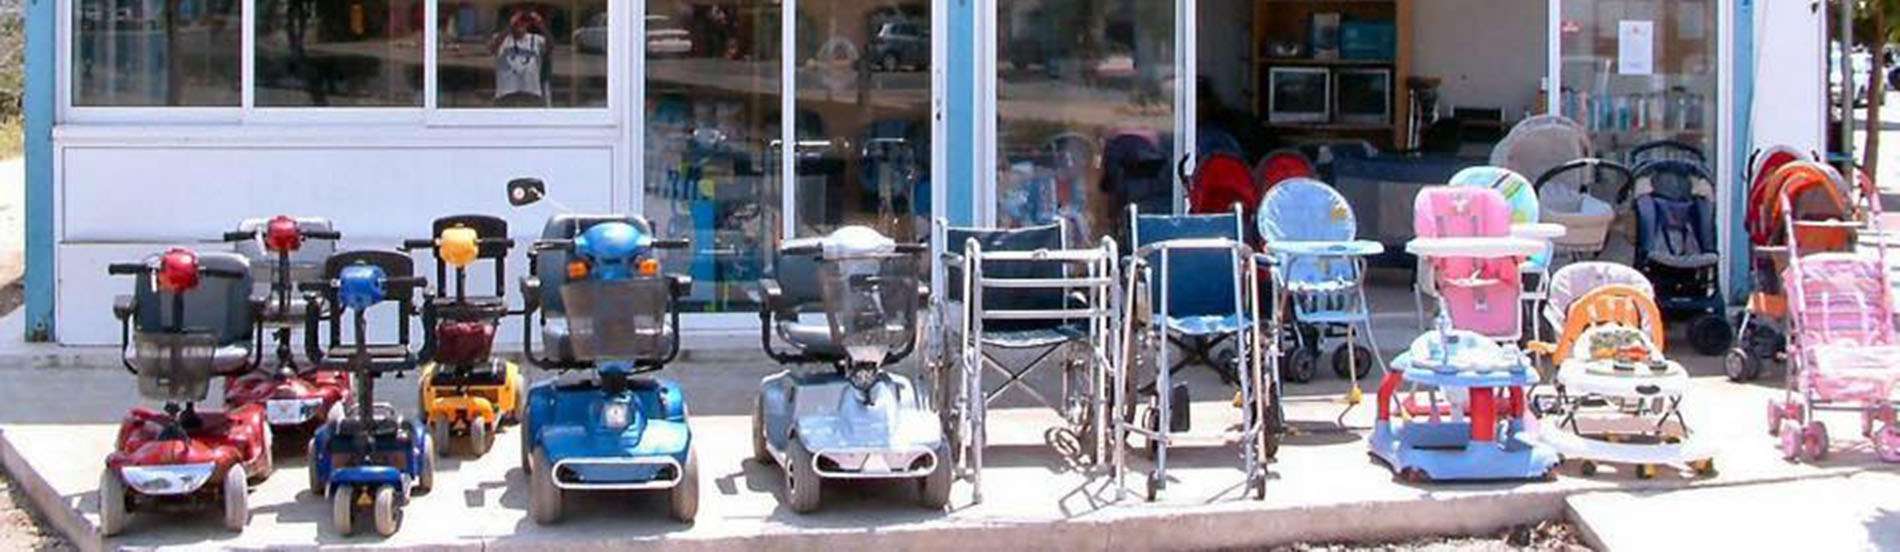 Ενοικίαση αναπηρικών ηλεκτρικών σκούτερ και παιδικού εξοπλισμού